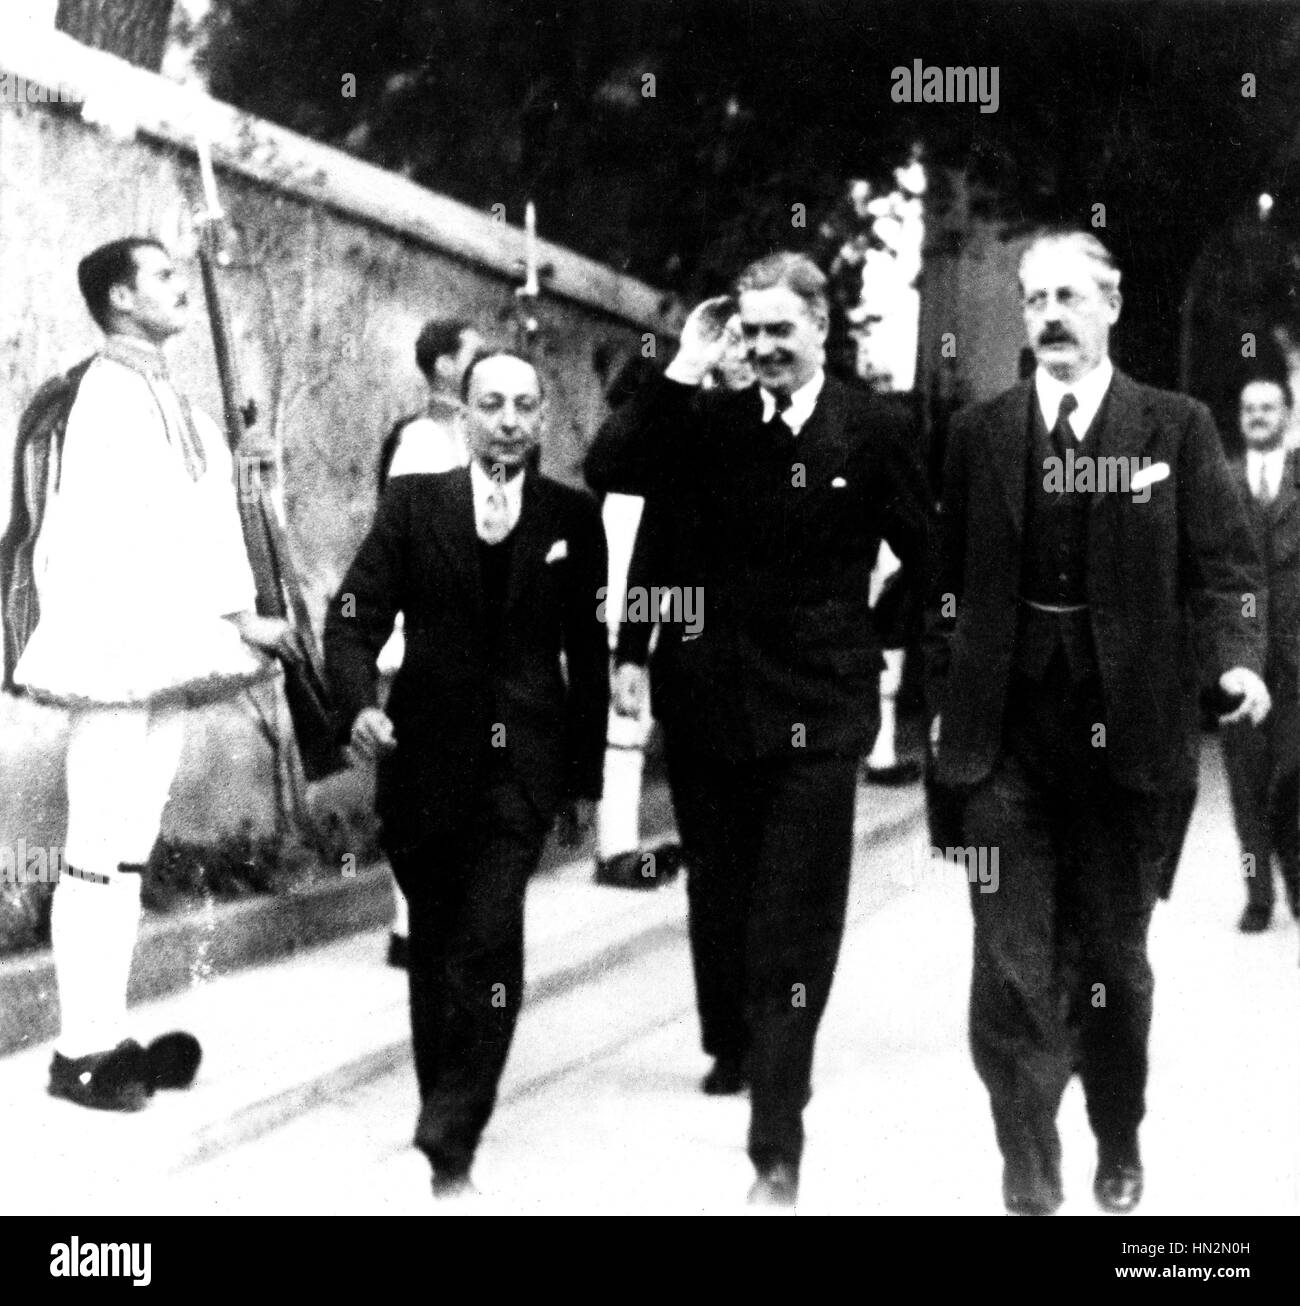 Befreiung Griechenlands: Eden und Mac Millan im 20. Jahrhundert Athen, zweiten Weltkrieg Krieg National Archives, Washington Stockfoto